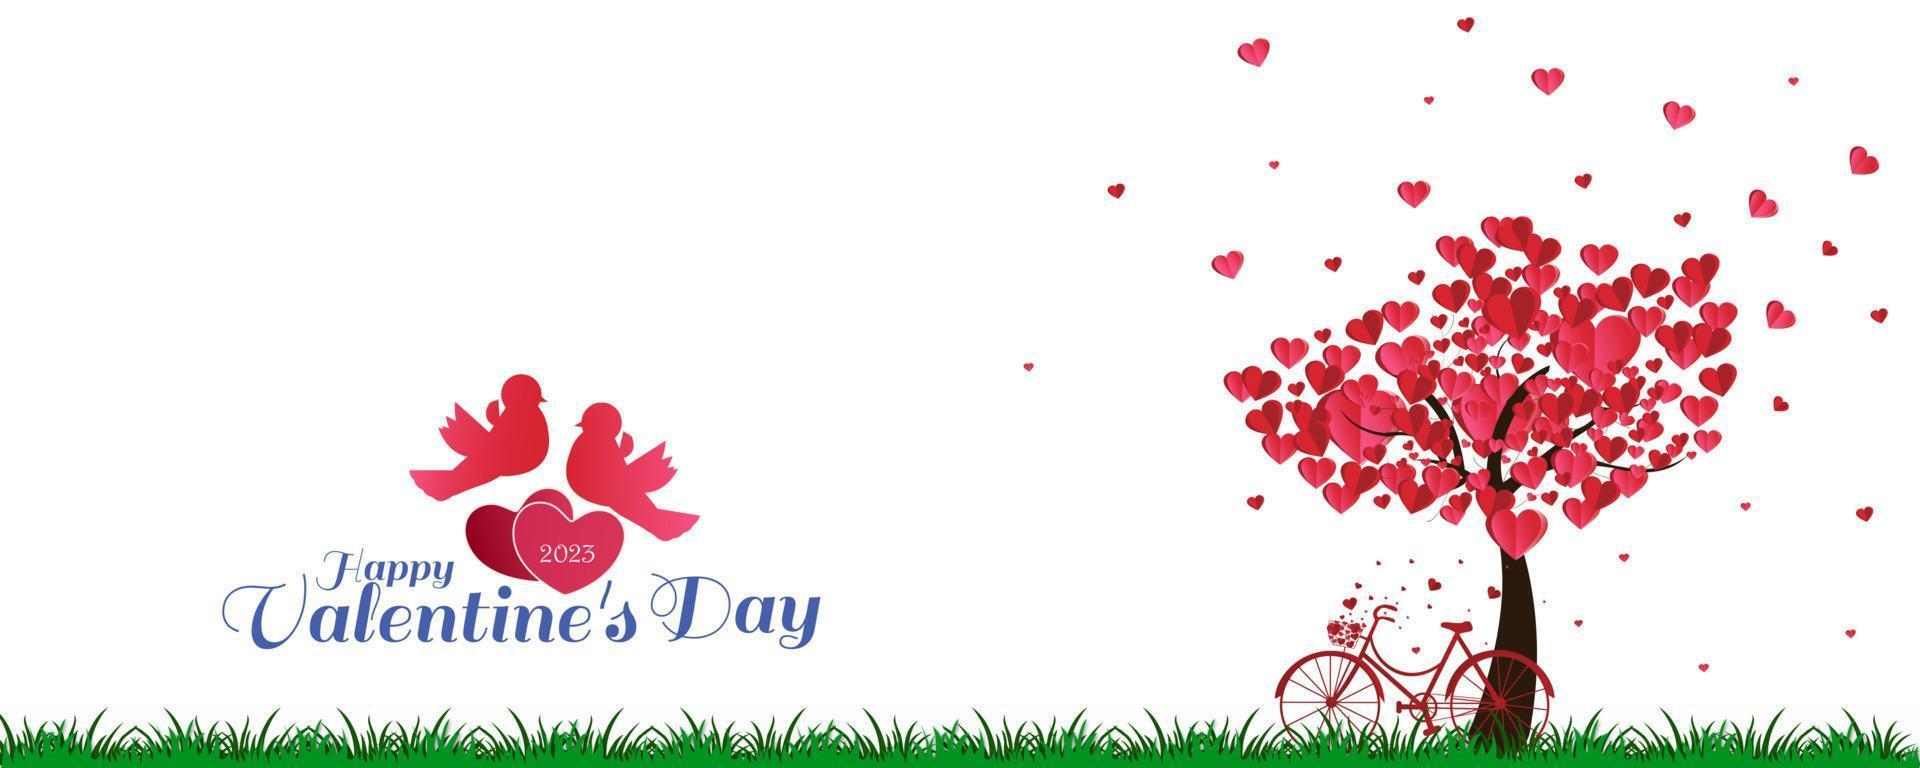 Lycklig hjärtans dag bakgrund med en hjärta formad träd och en cykel med kärlek fåglar. vektor illustration.